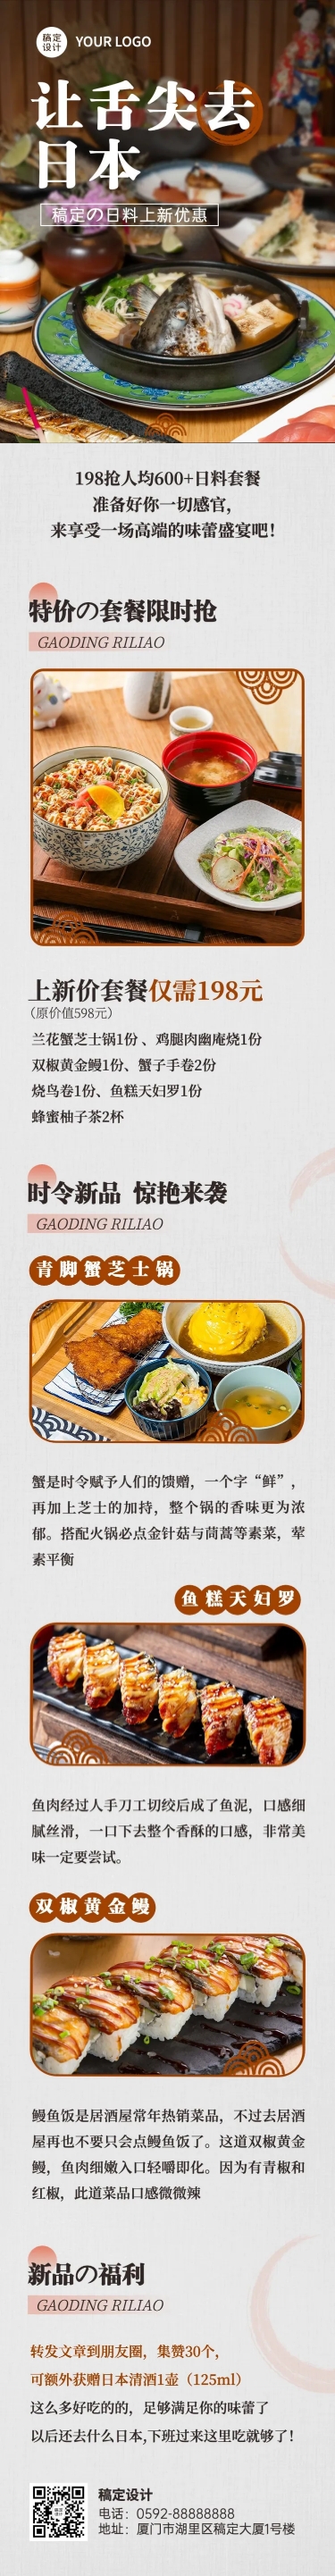 餐饮日本料理产品促销实景风文章长图